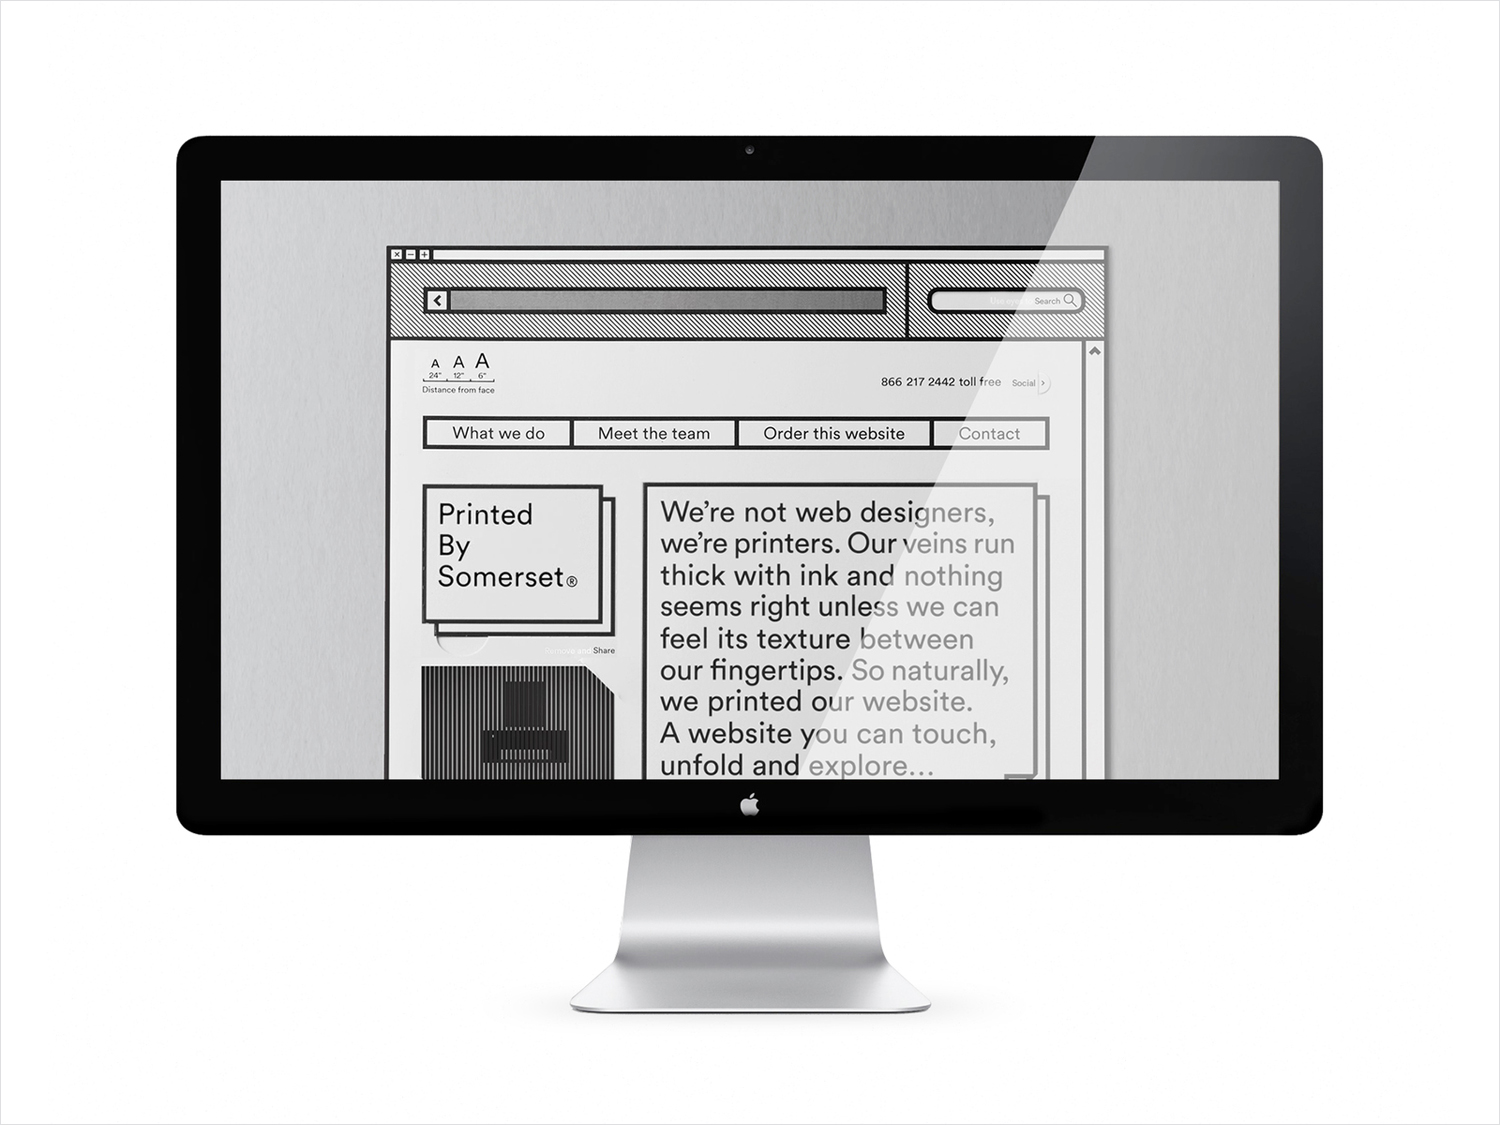 Branding and website by Leo Burnett Toronto for print production studio Somerset